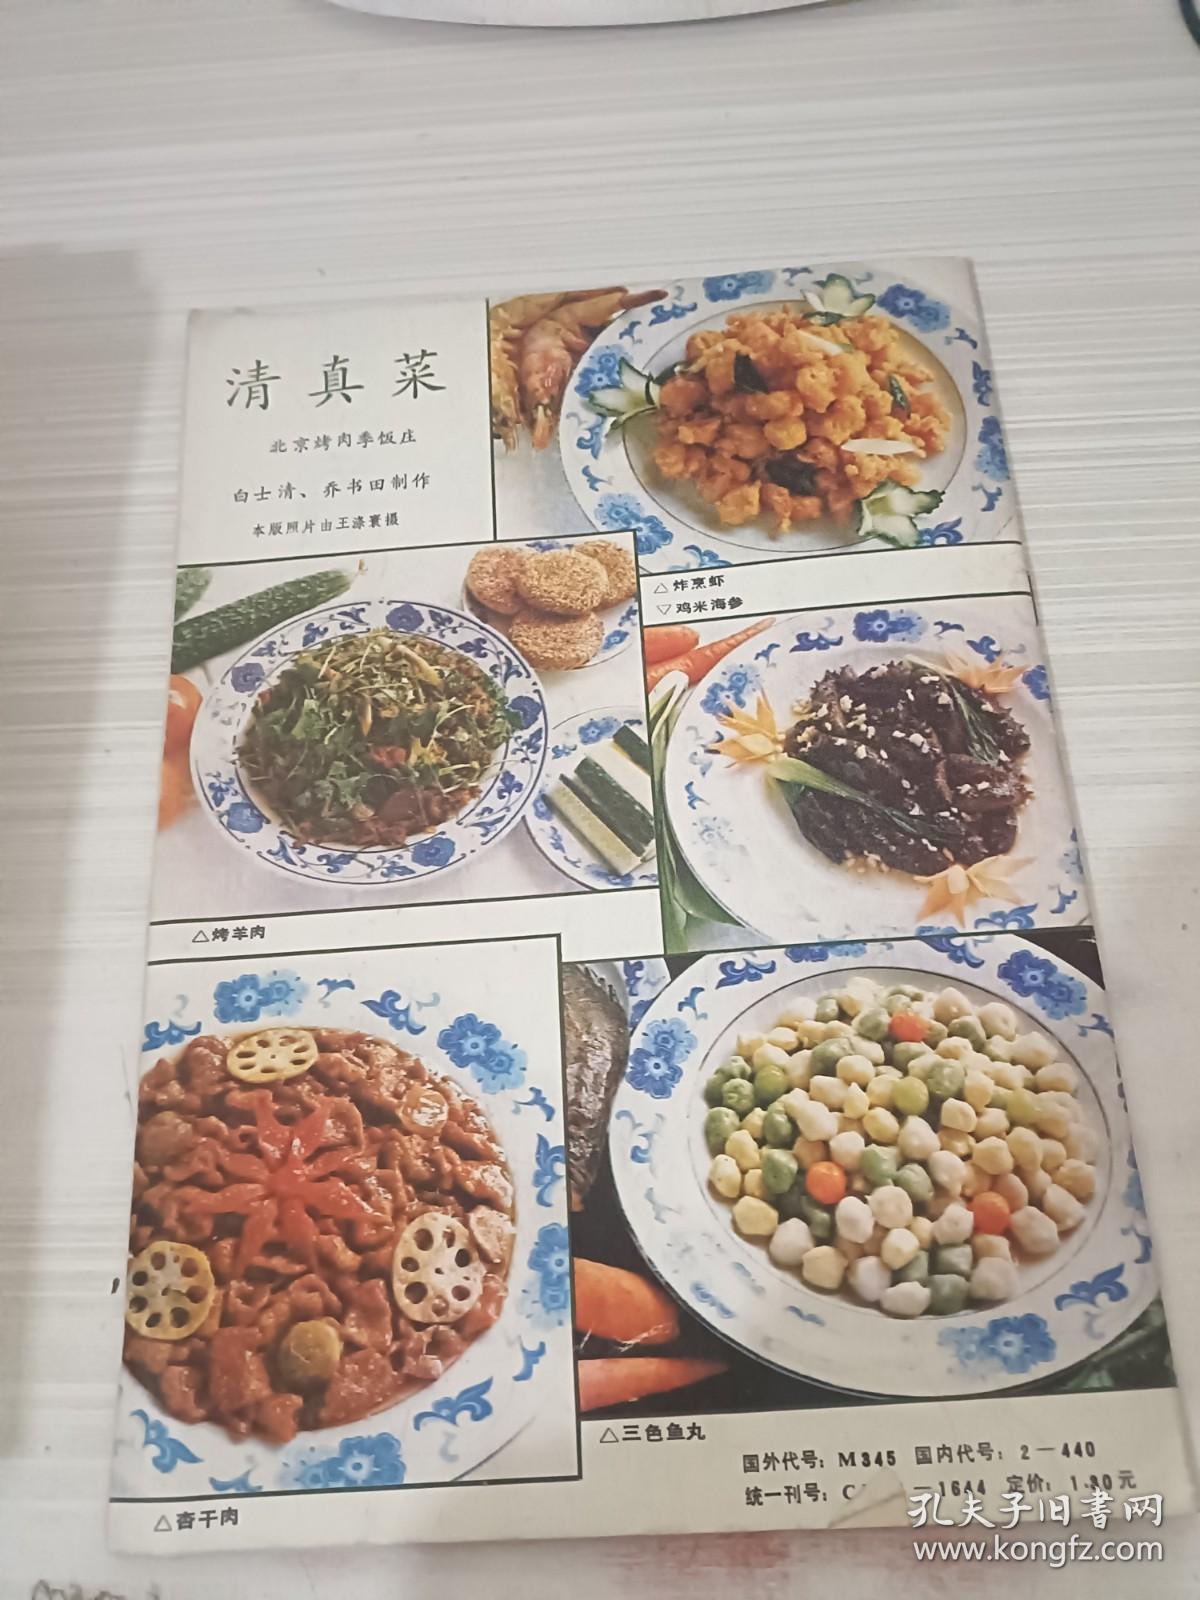 中国烹饪 1990年第7期